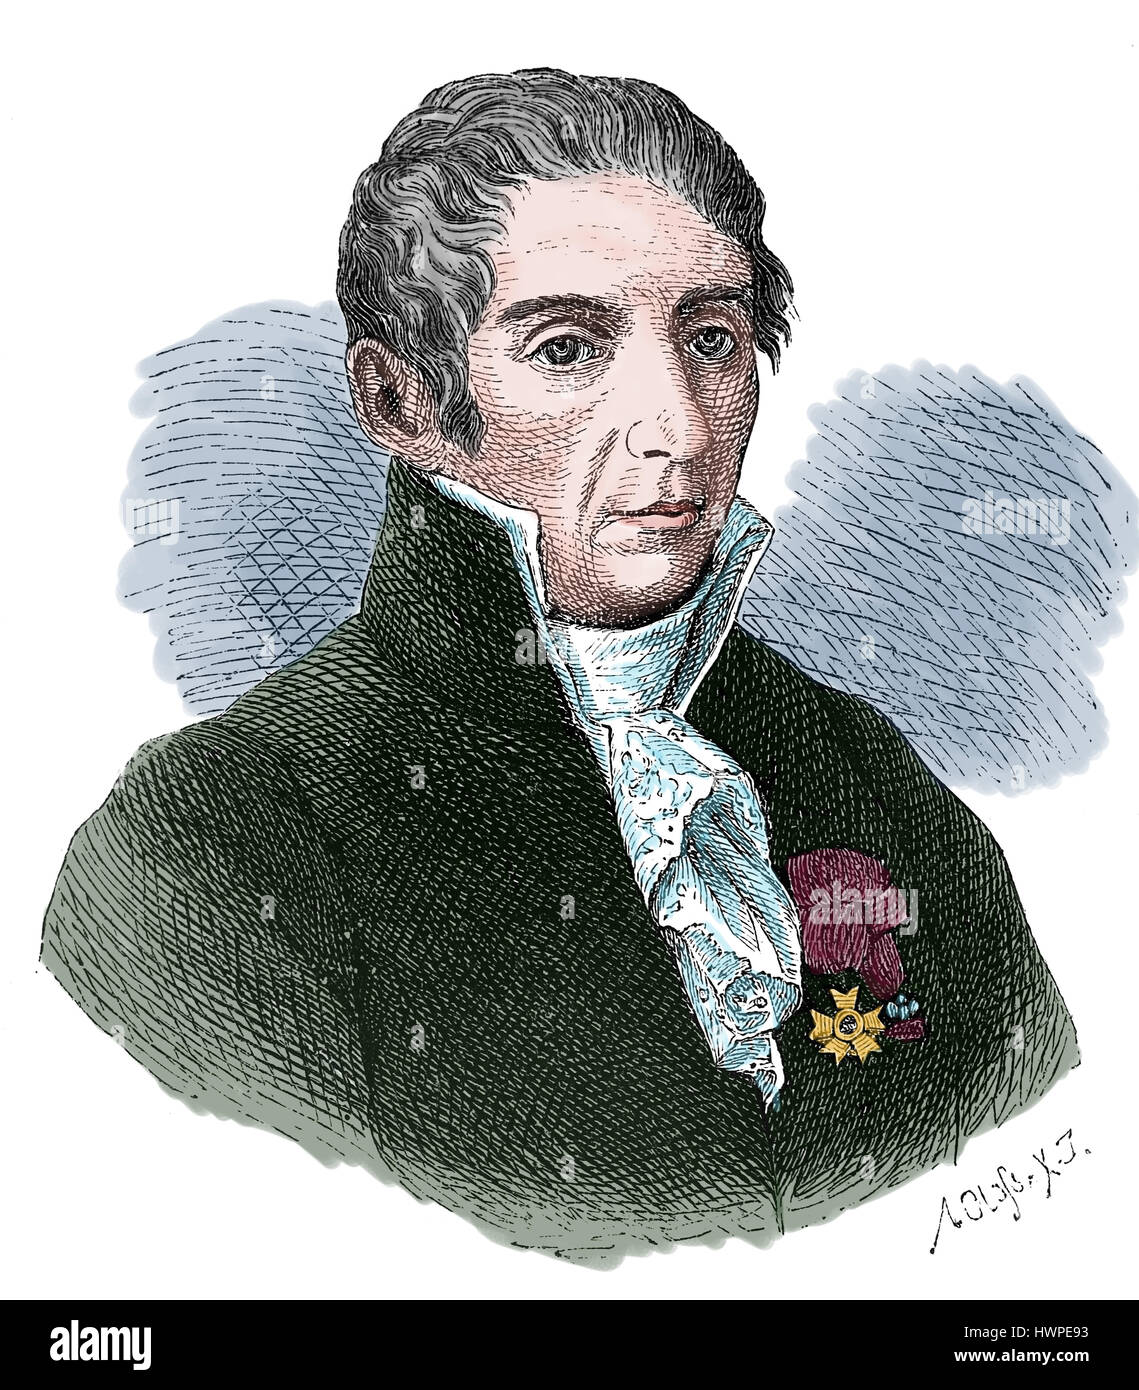 Alessandro Volta (1745-1827). Physicien, chimiste italien et pionner de l'électricité. Gravure, 1883. Banque D'Images